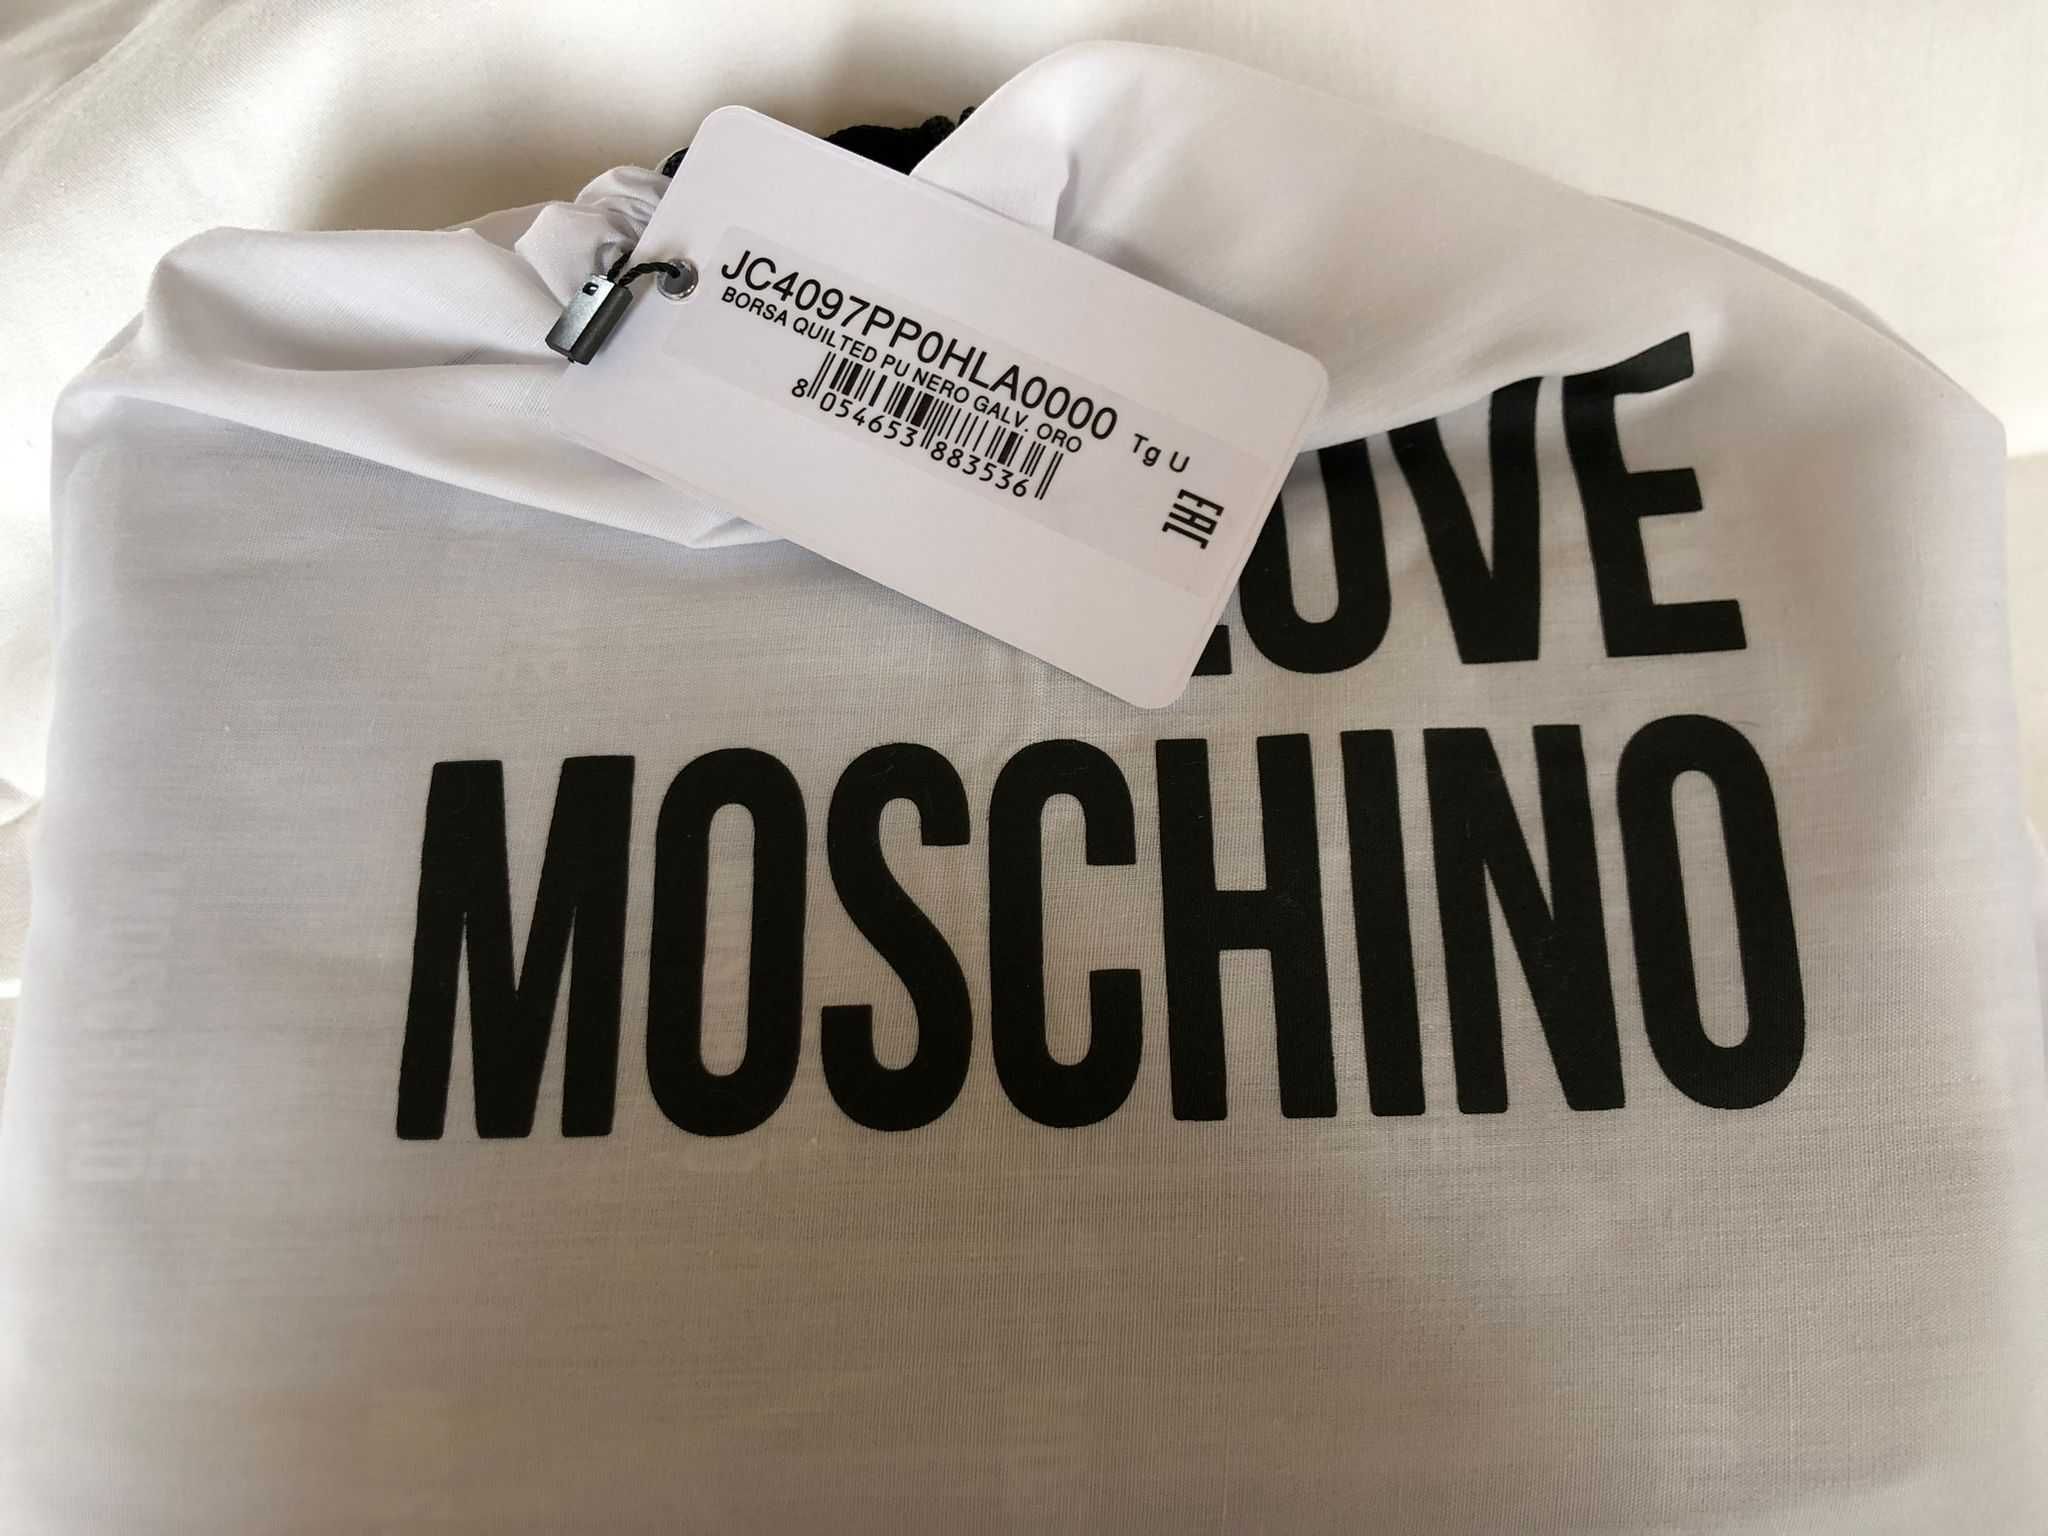 Mala Love Moschino , Nova com etiquetas